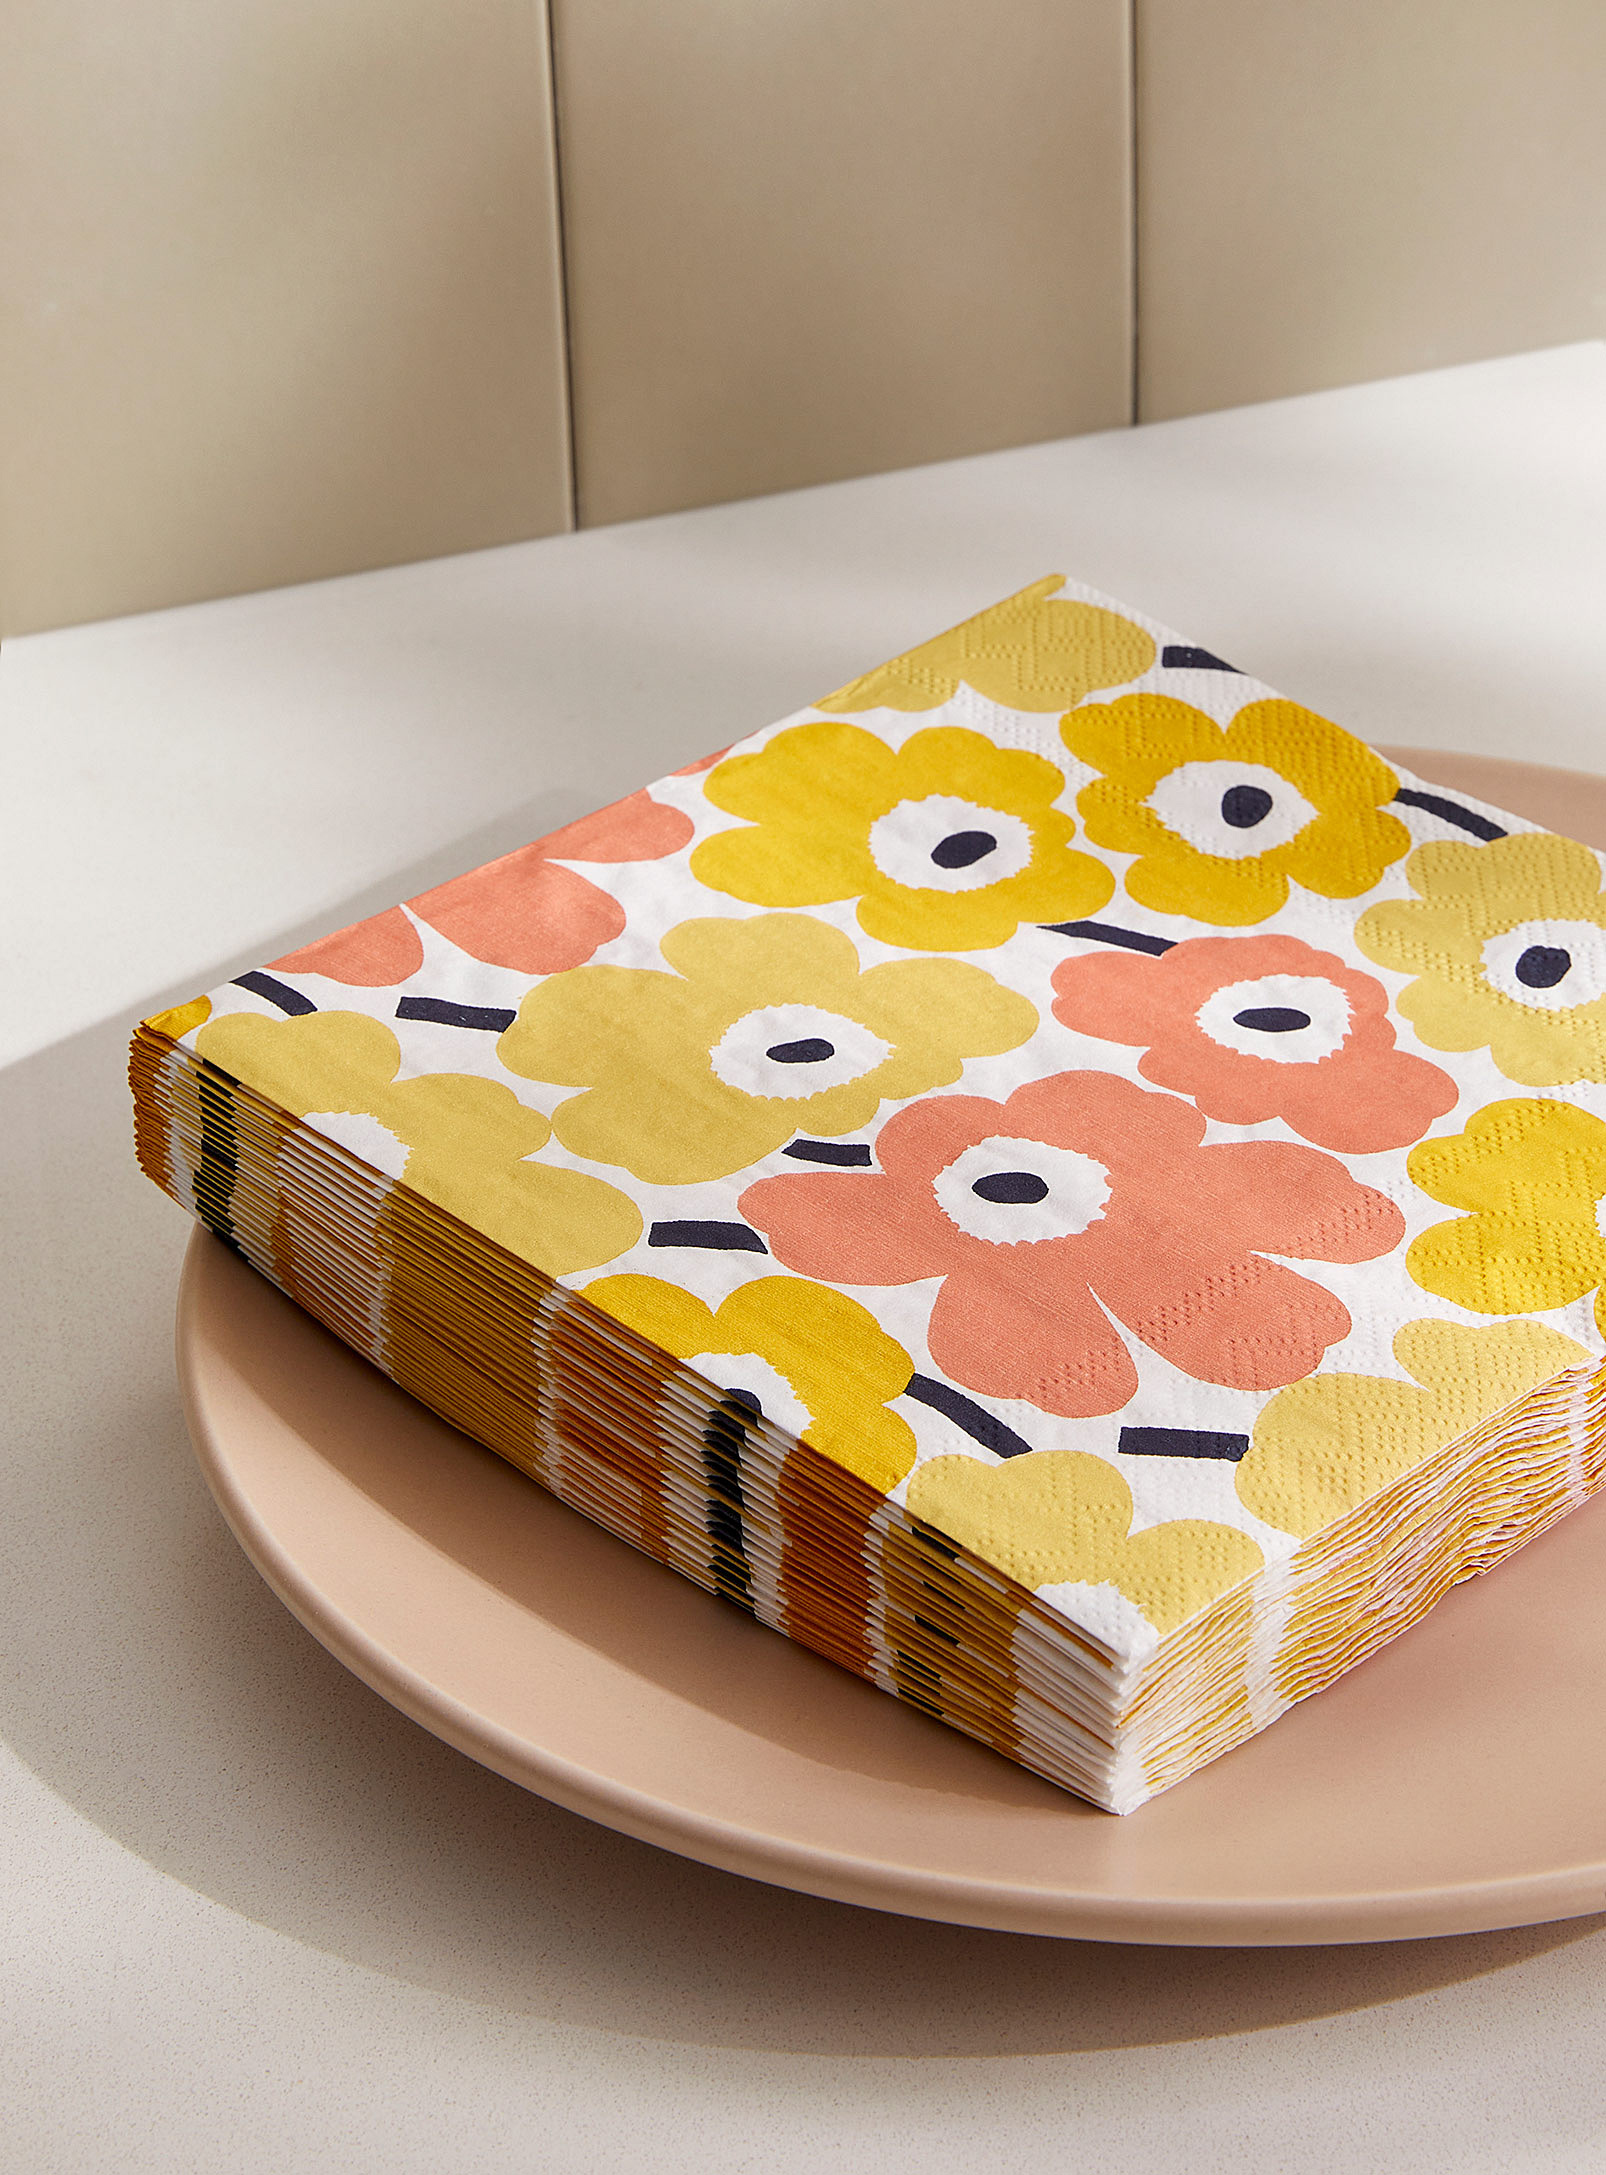 Marimekko - Les serviettes en papier fleurs jaunes Unikko 16,5 x 16,5 cm. Paquet de 20.